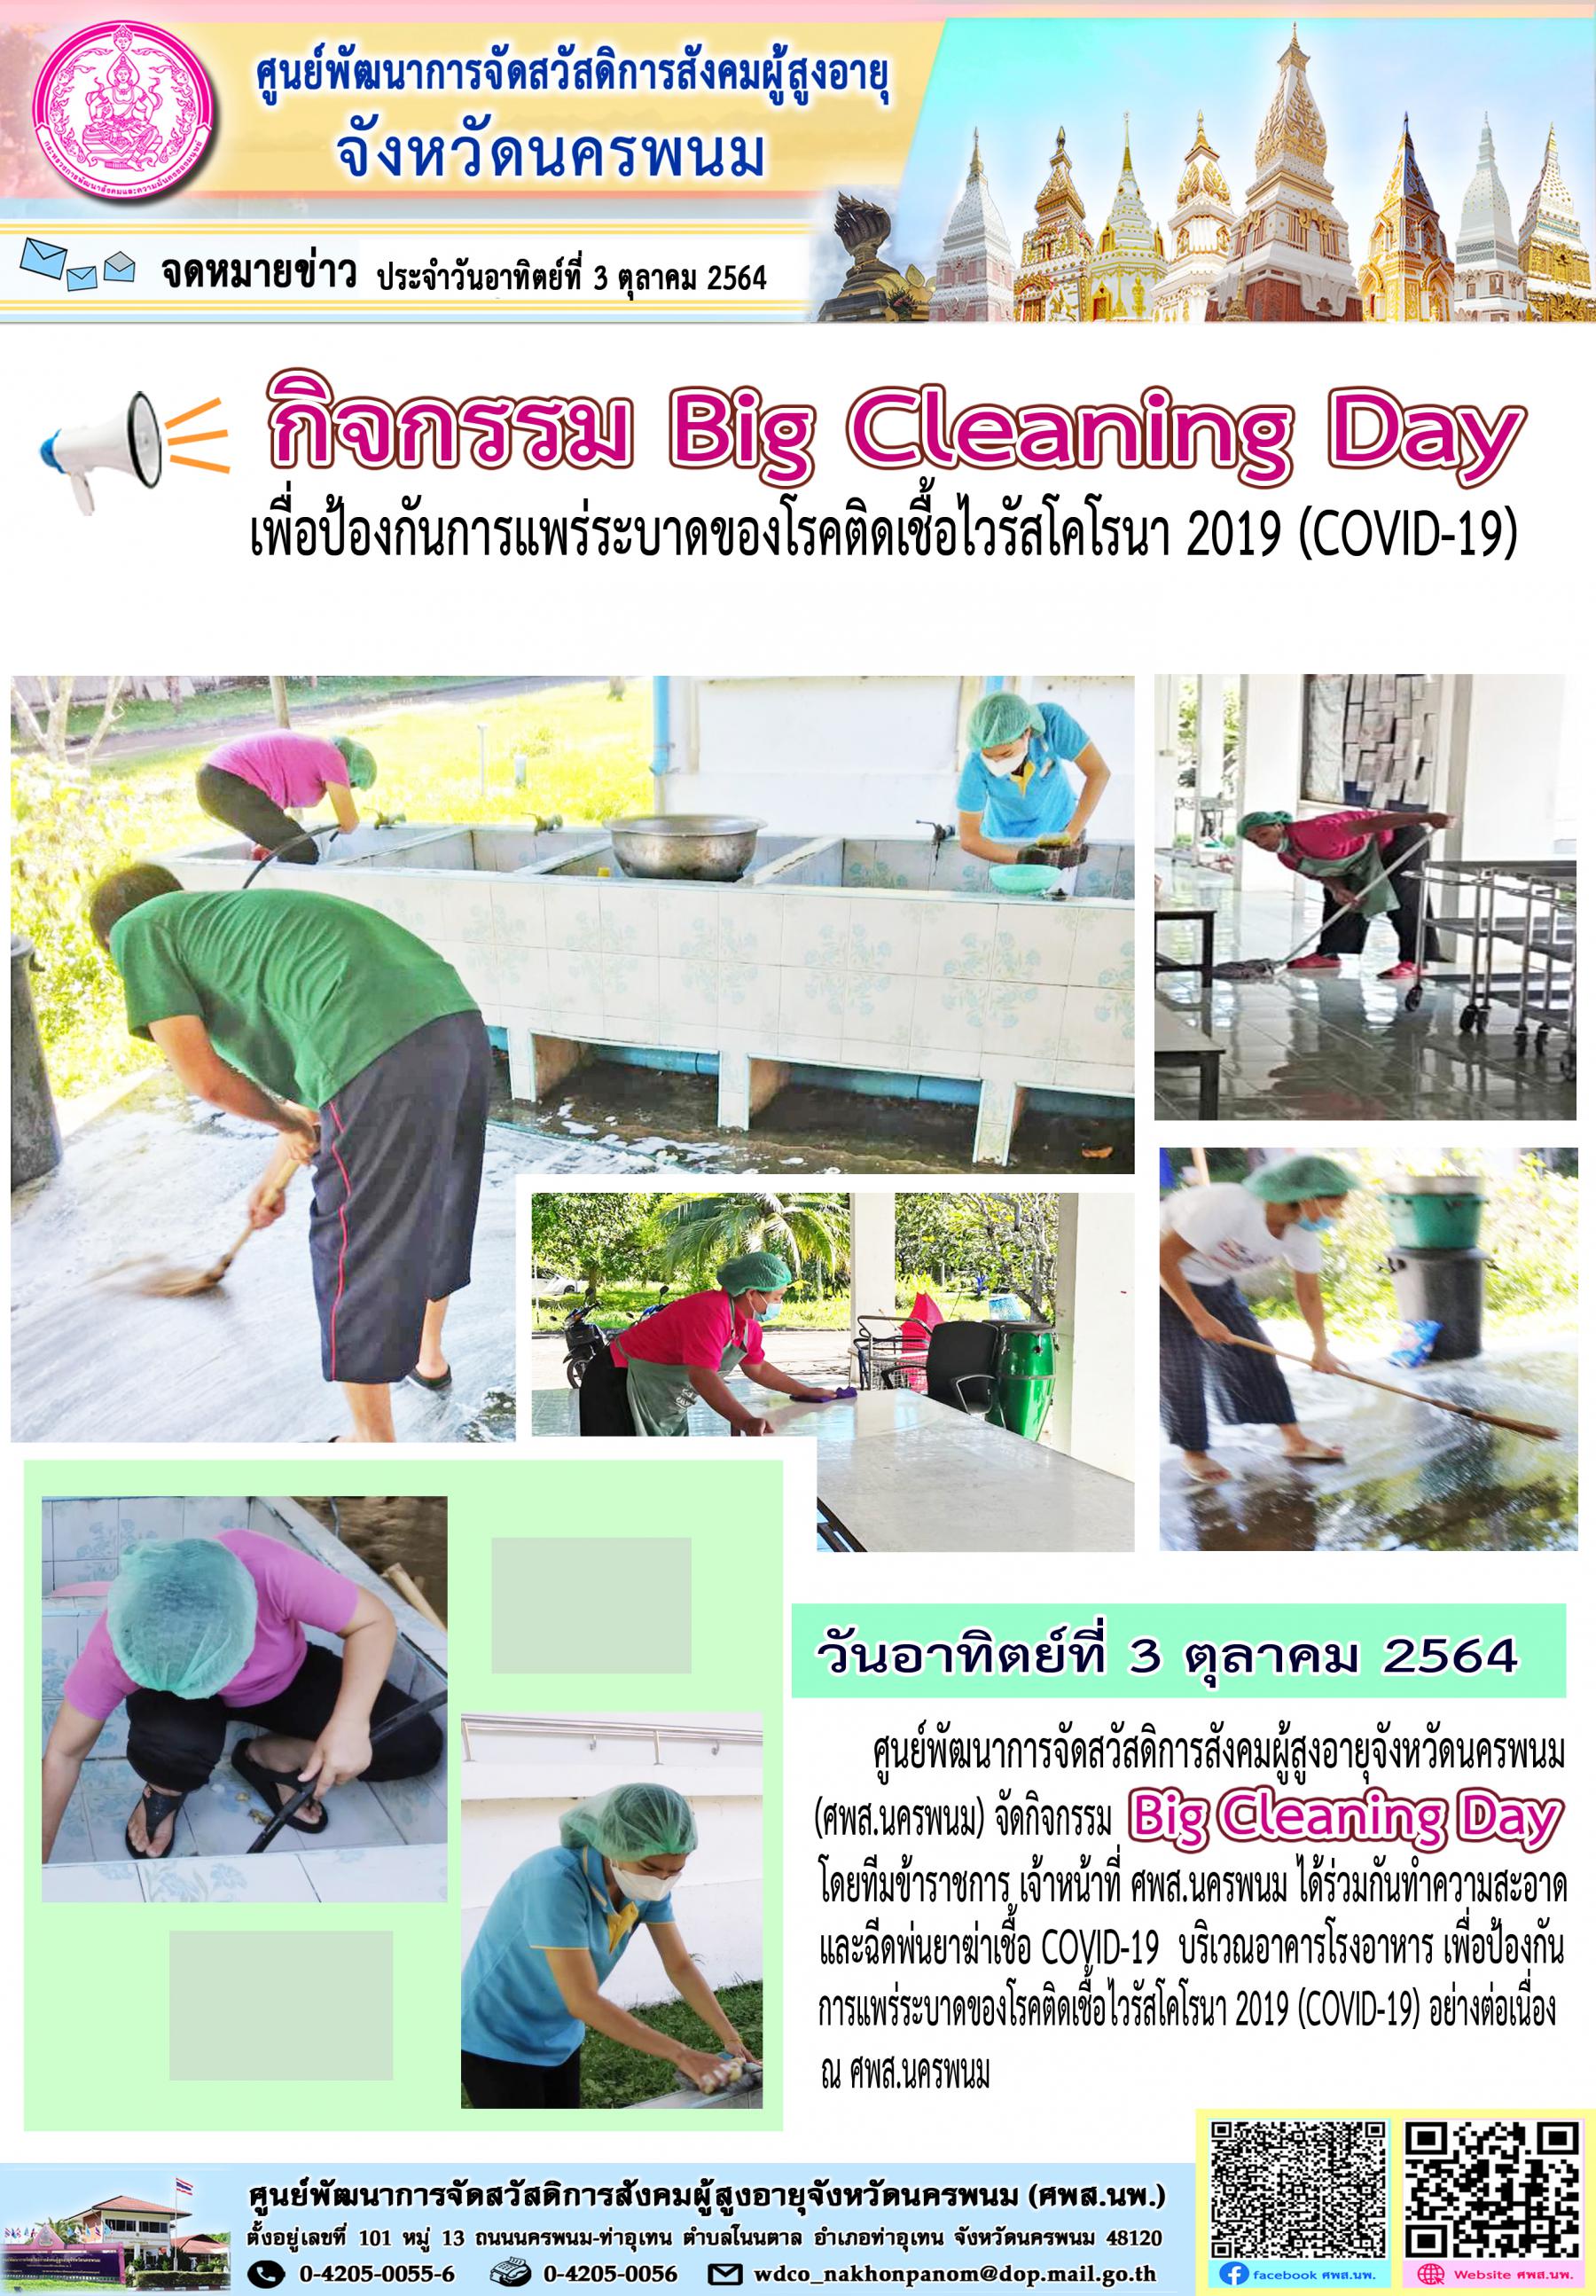 จัดกิจกรรม Big Cleaning Day เพื่อป้องกันการแพร่ระบาดของโรคติดเชื้อไวรัสโคโรนา 2019 (COVID-19)